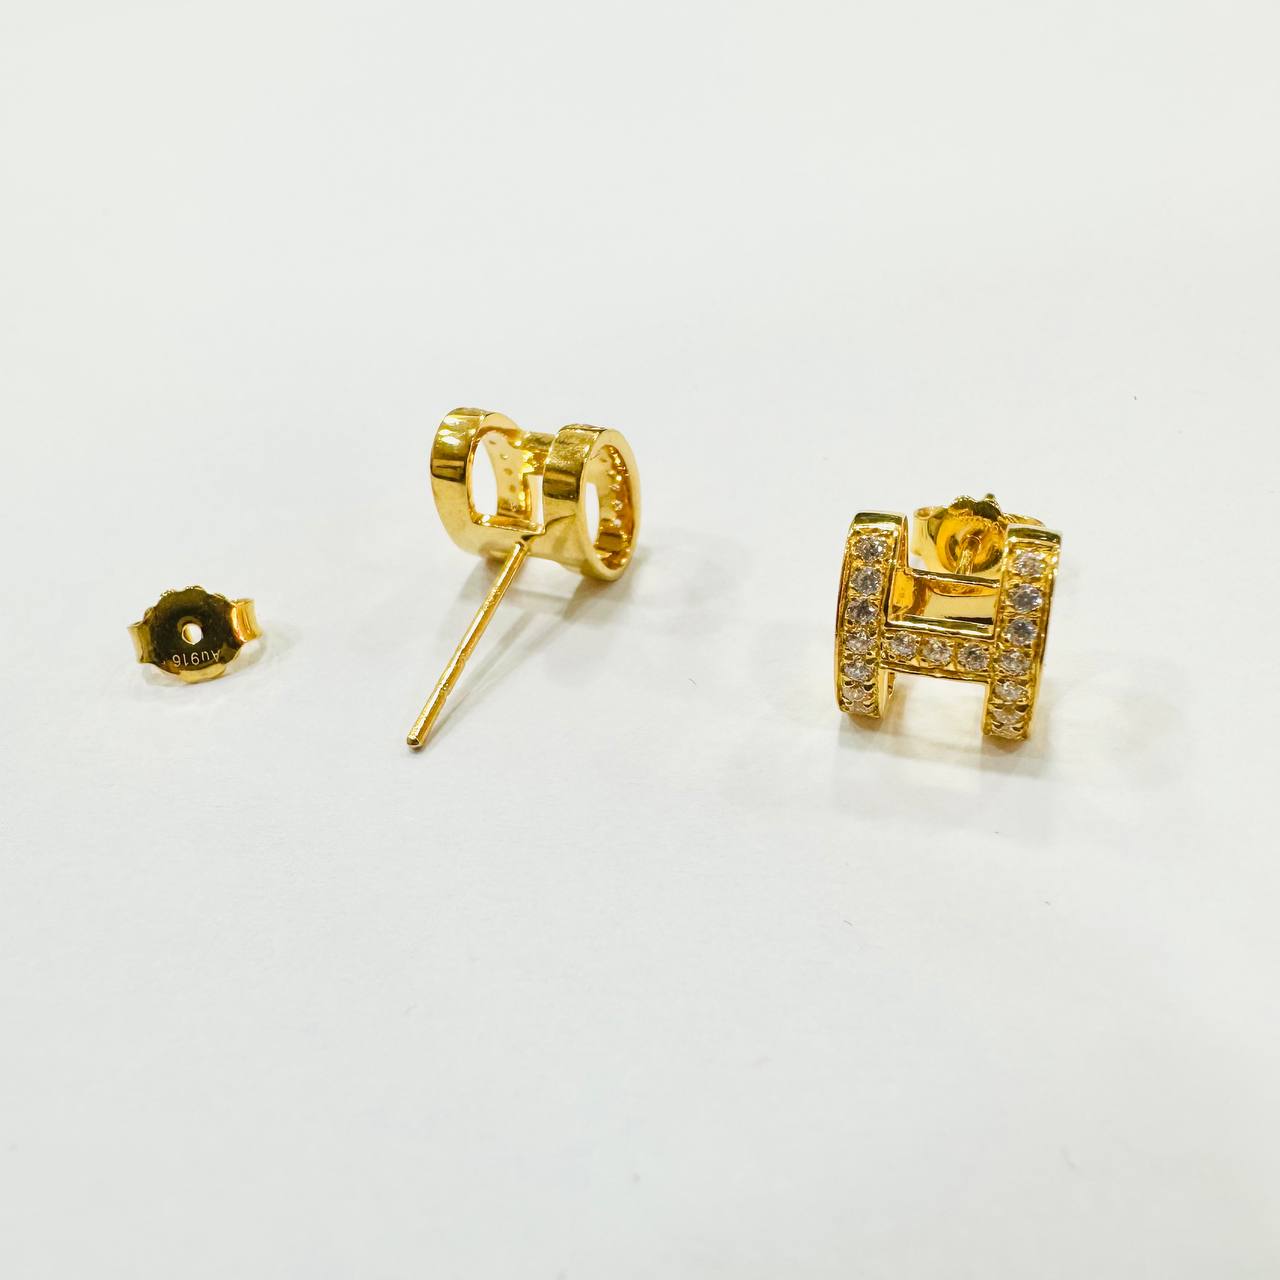 22k / 916 Gold H Design Earring Bigger-Earrings-Best Gold Shop